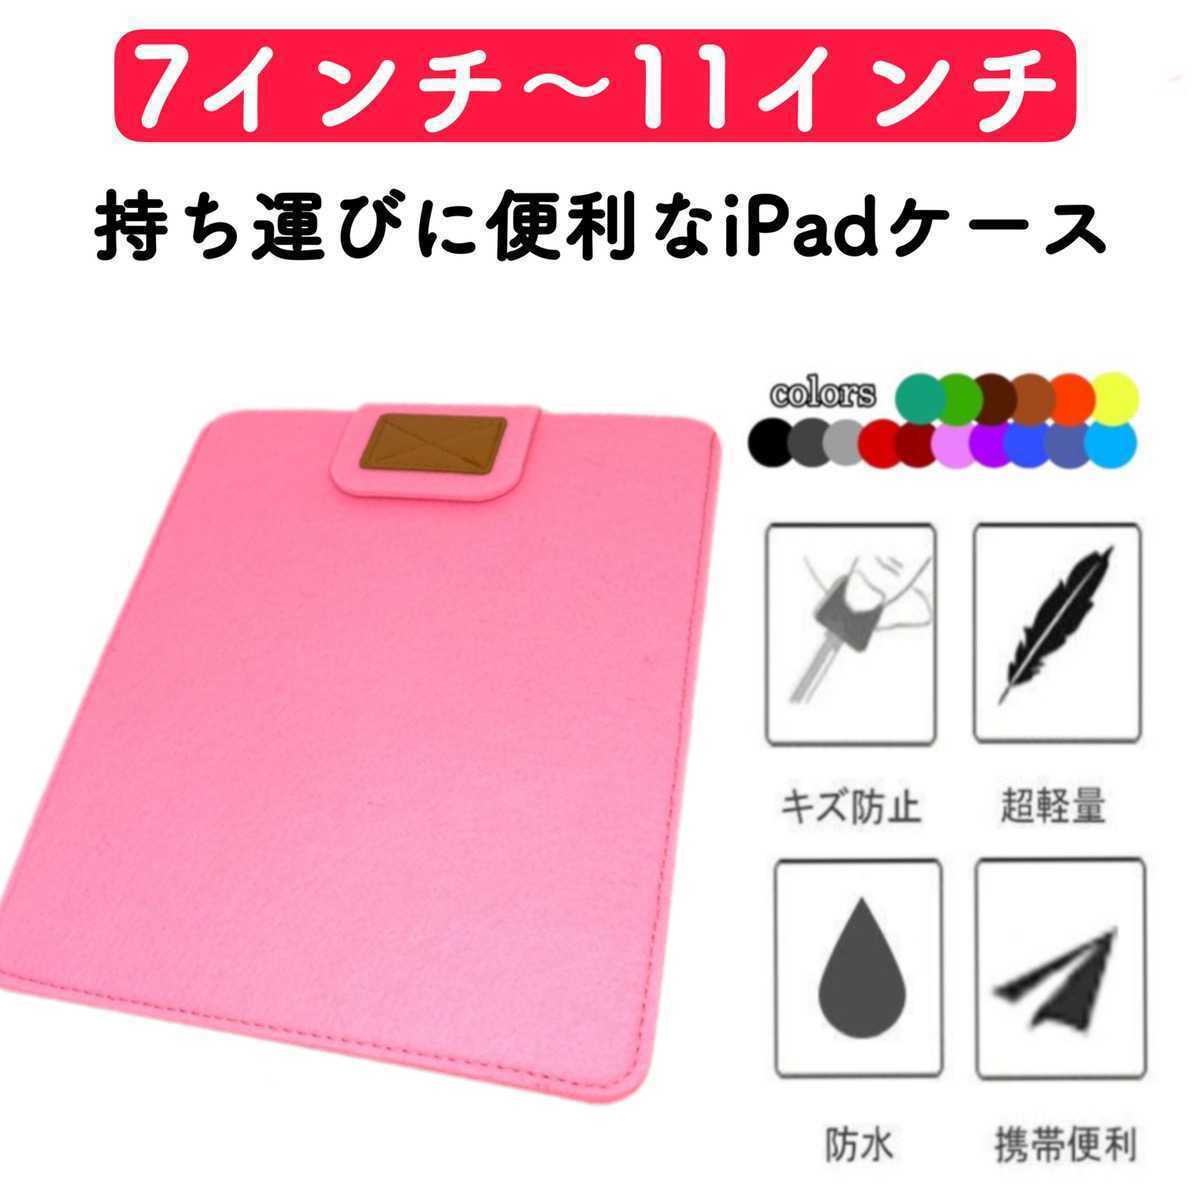 タブレットケース iPadケース コンパクト 薄型 フェルト カバー ピンク 激安 7インチ 8インチ 9インチ 10インチ 11インチ 保護ケース_画像1